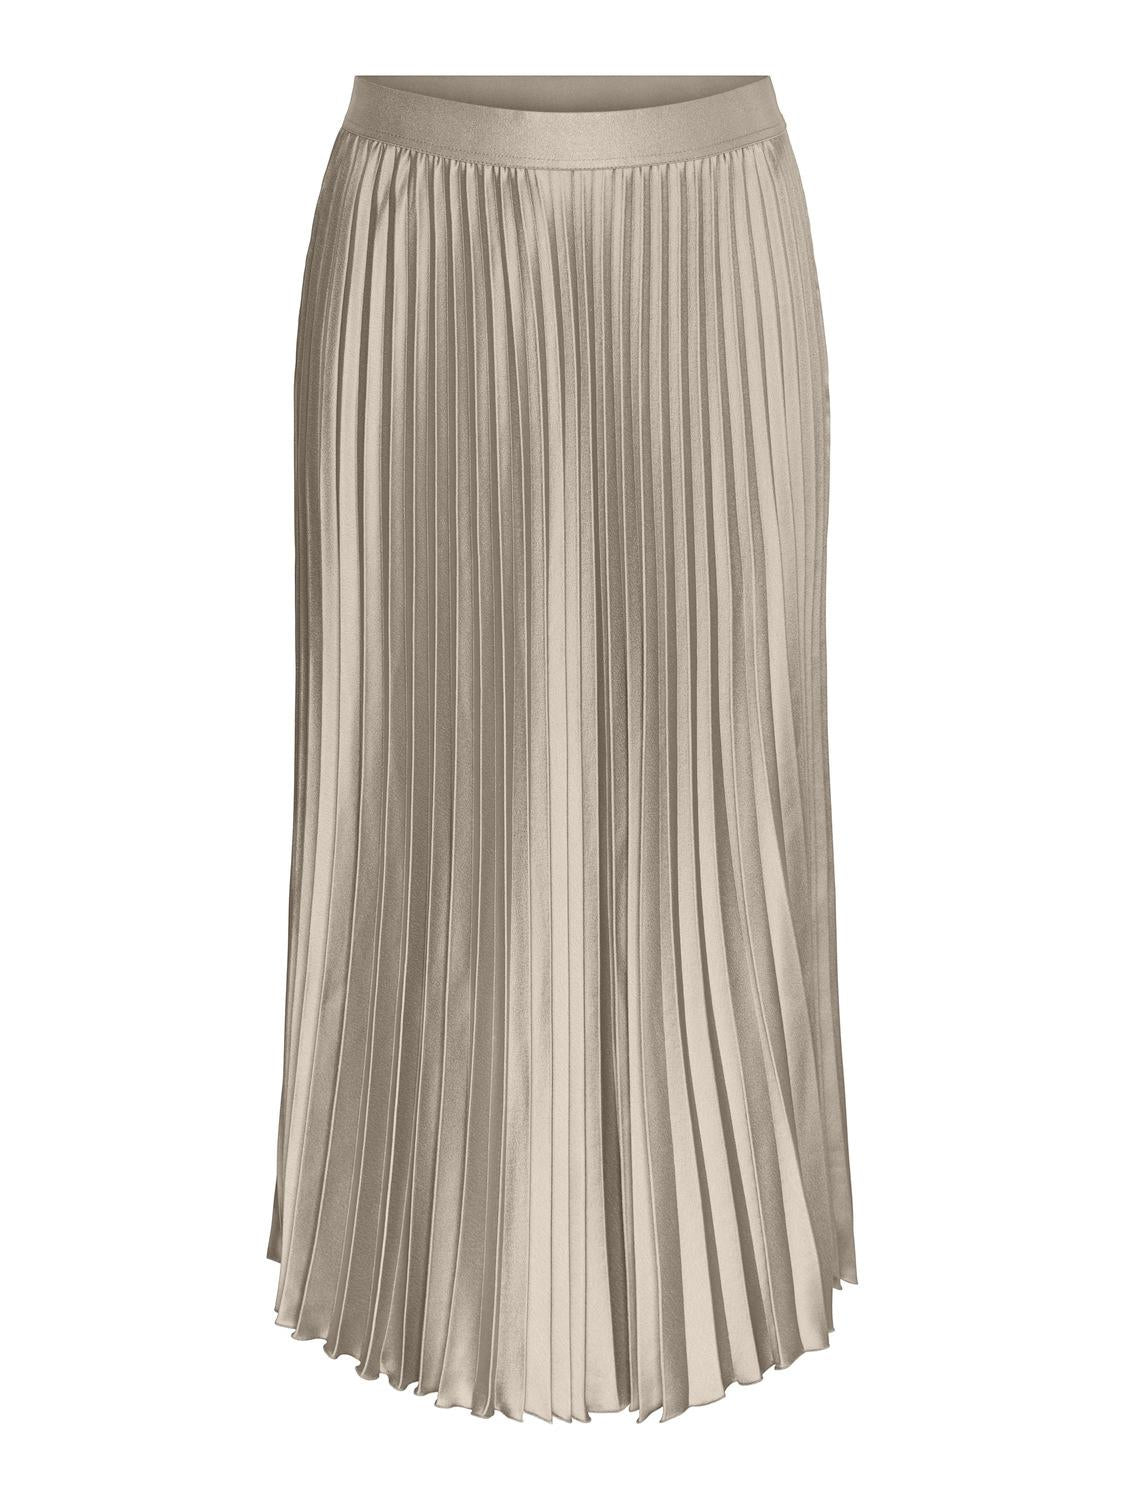 YASCELINE Skirt - Whitecap Gray